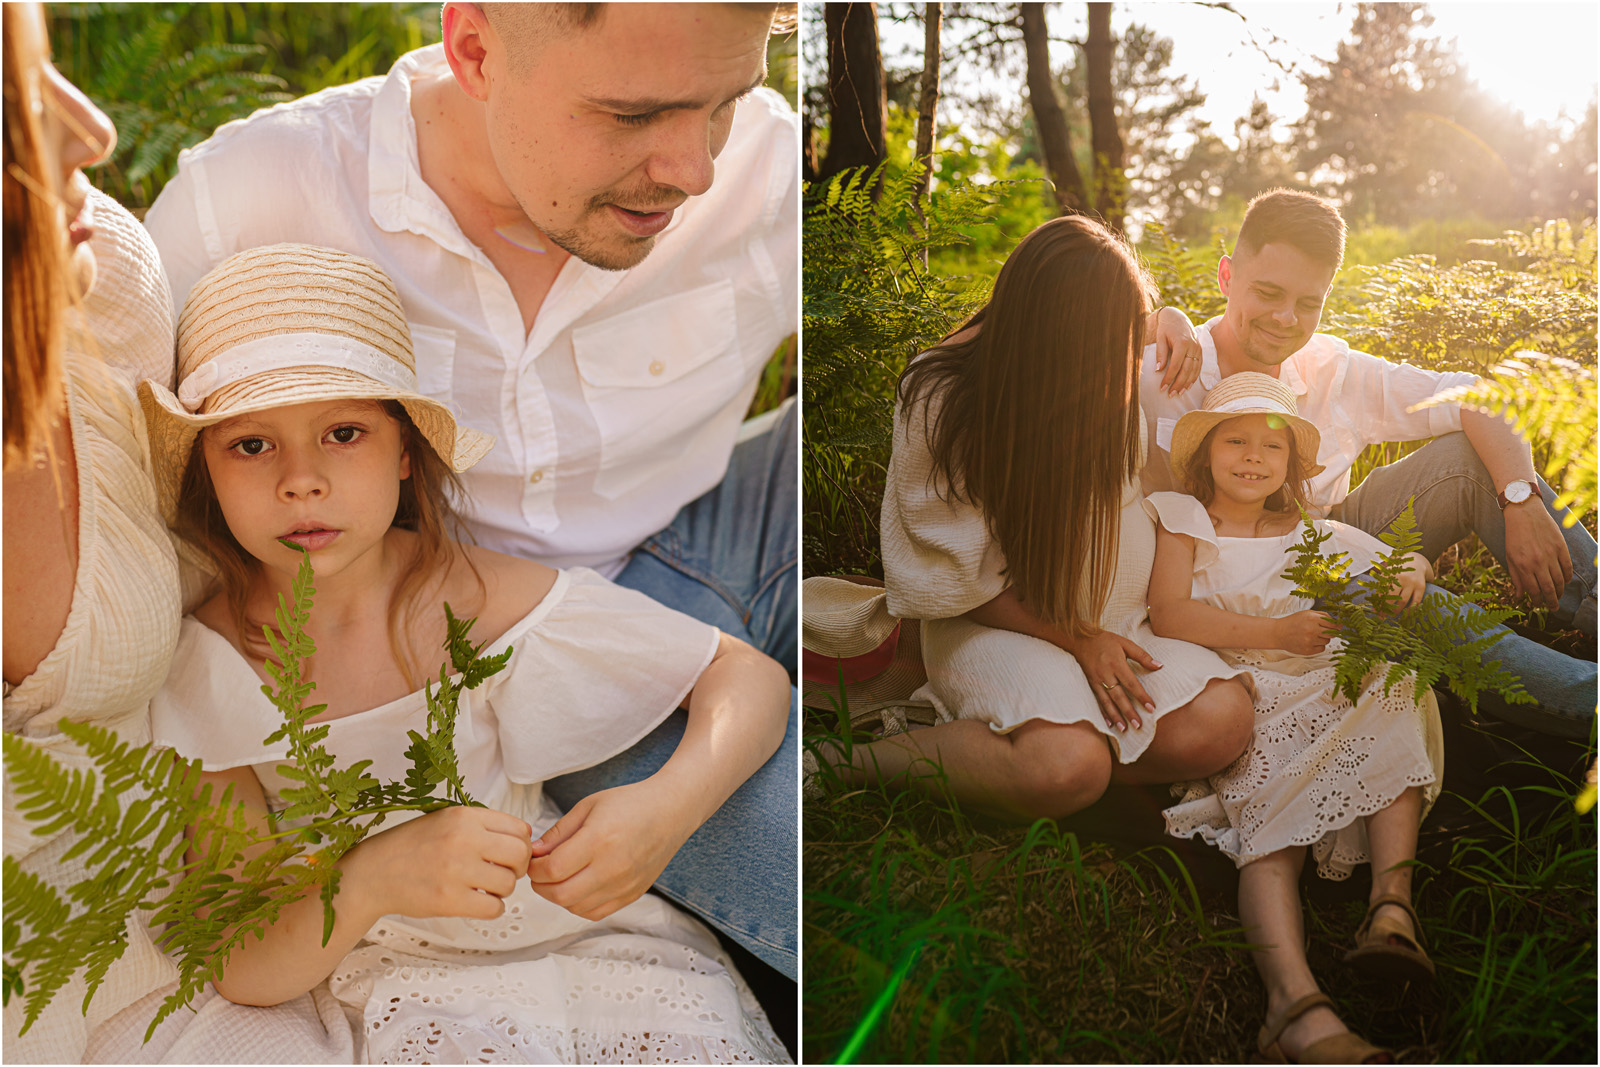 Iza, Piotrek i Zuzia | rodzinna sesja w rezerwacie Grabina-Dalnia 16